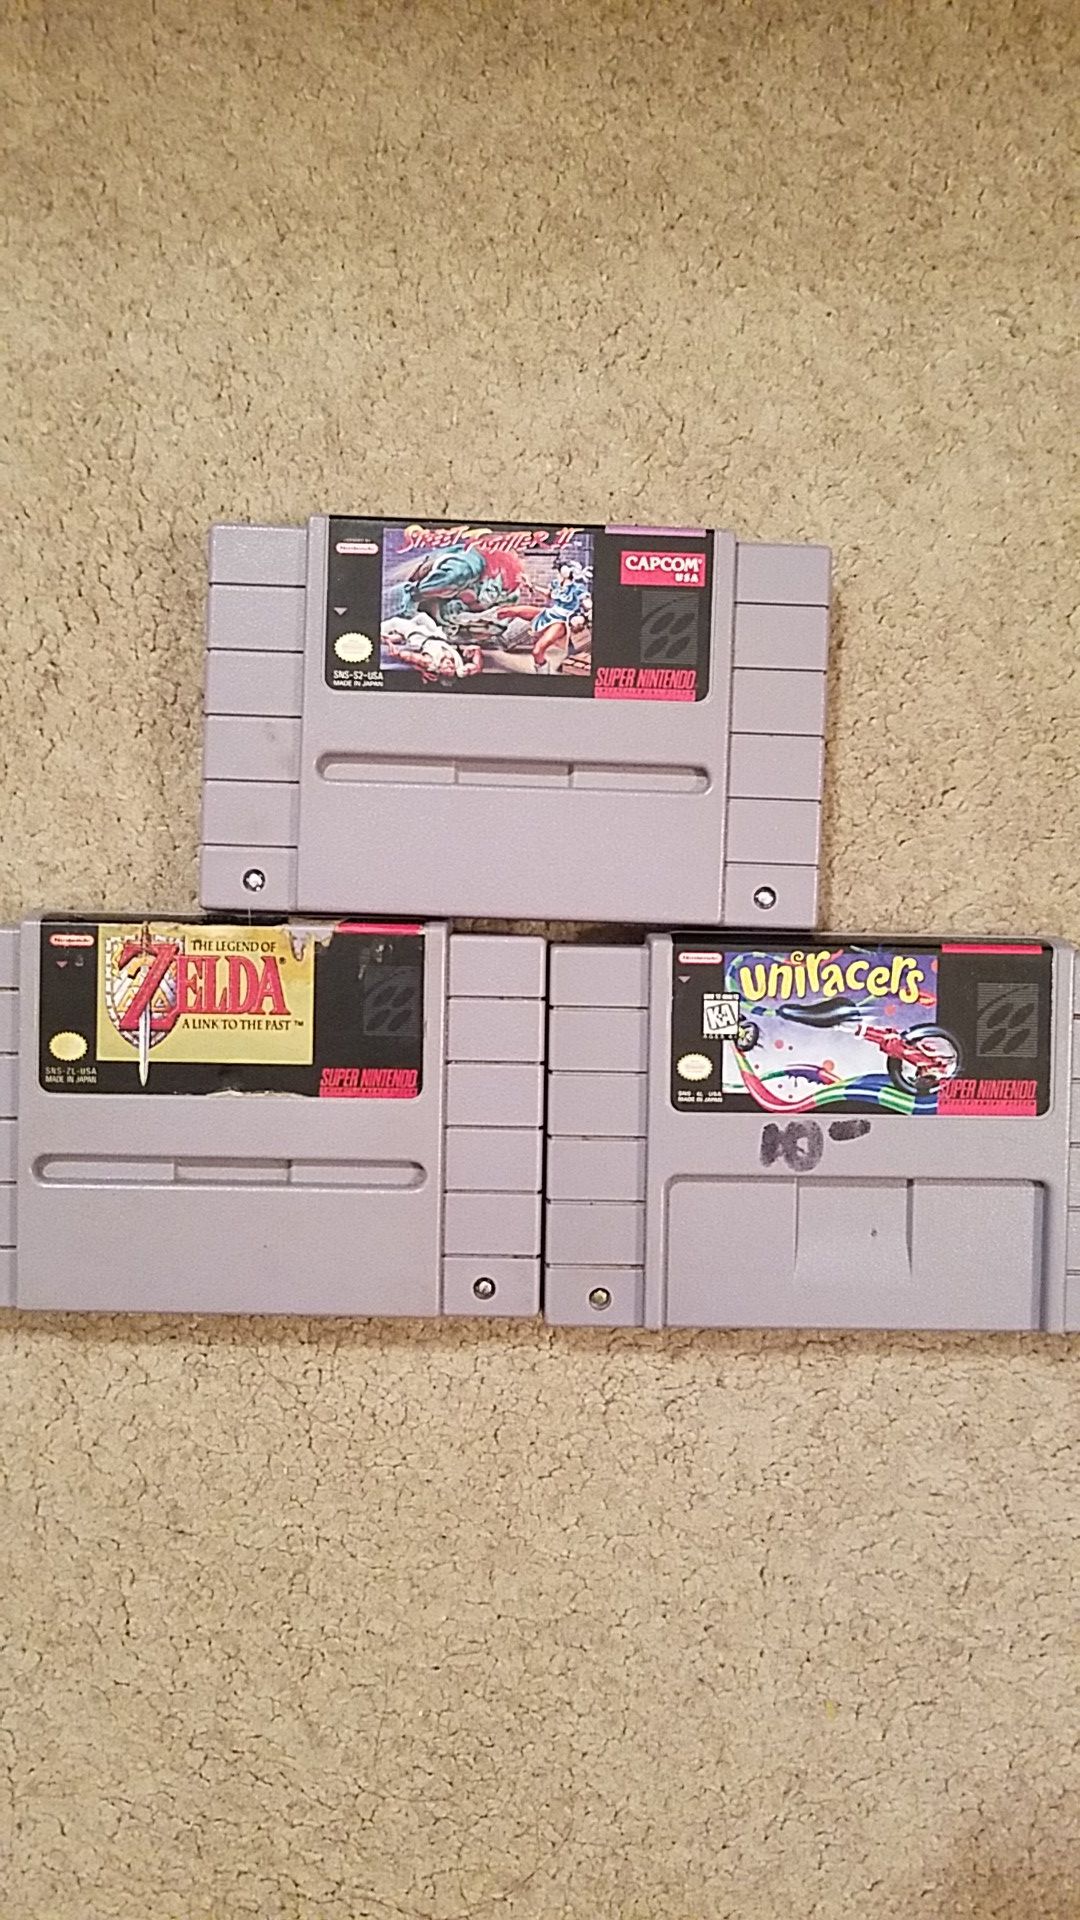 3 super Nintendo games.